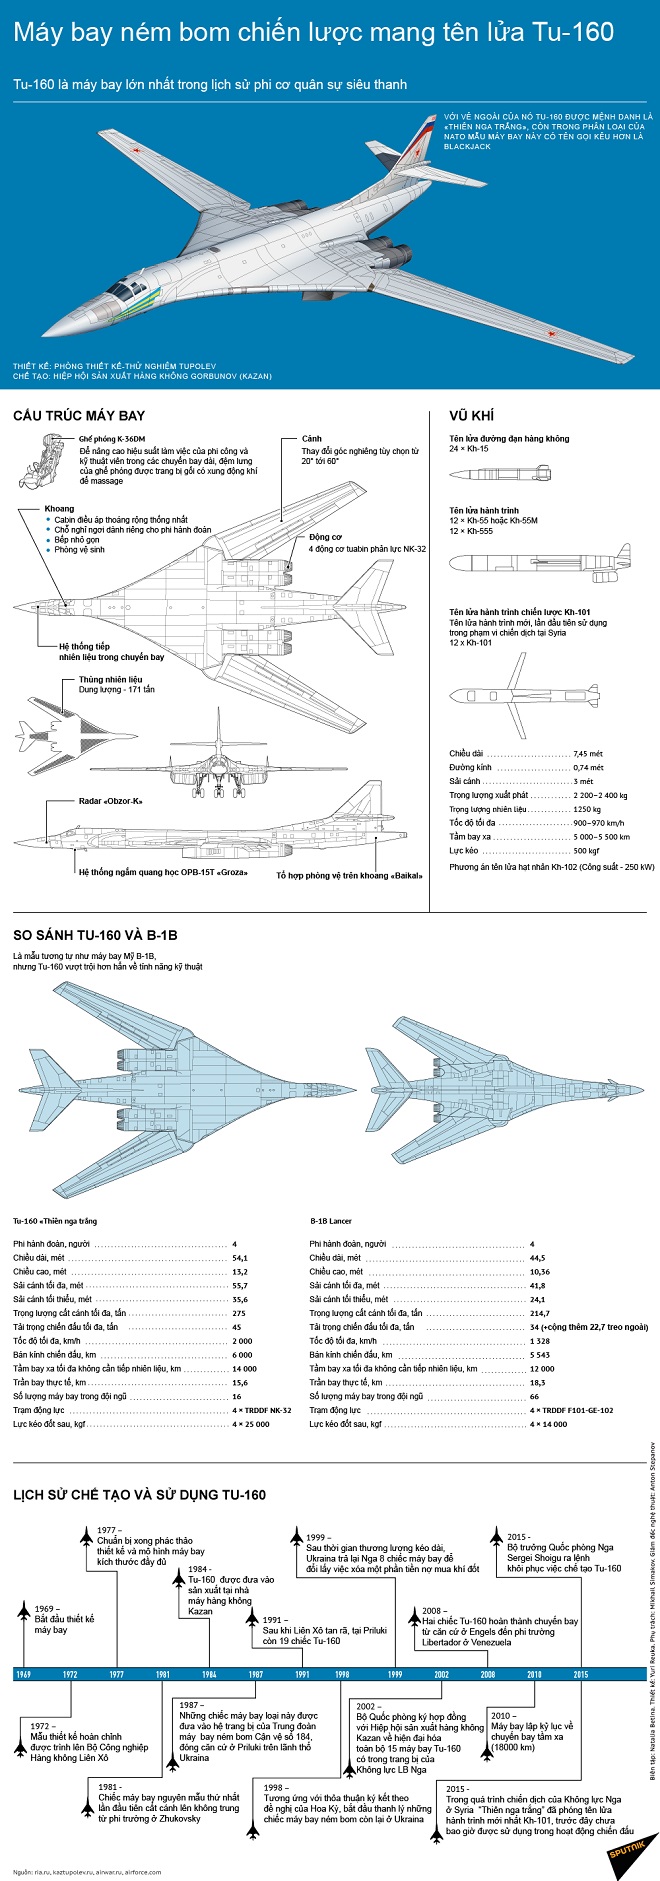 Tu-160: Thiết kế đẹp mắt, tốc độ nhanh chóng mà không mất tính năng tấn công, chắc chắn sẽ khiến bạn say mê. Hãy xem hình ảnh của Tu-160, chiếc máy bay ném bom tối tân nhất của Nga, để chiêm ngưỡng sự hoàn hảo của nó.